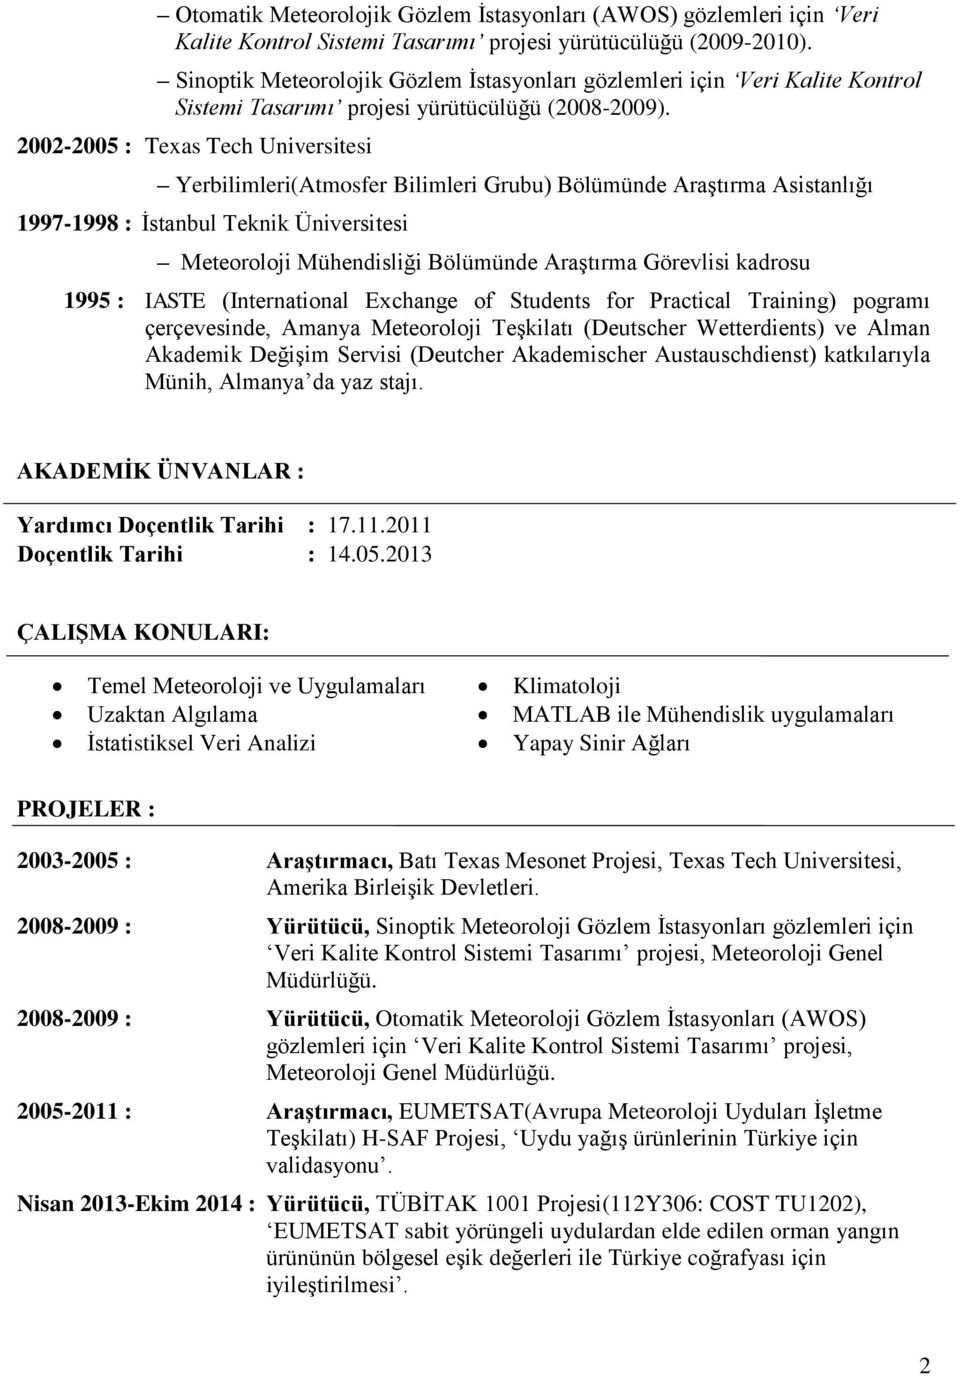 2002-2005 : Texas Tech Universitesi Yerbilimleri(Atmosfer Bilimleri Grubu) Bölümünde Araştırma Asistanlığı 1997-1998 : İstanbul Teknik Üniversitesi Meteoroloji Mühendisliği Bölümünde Araştırma